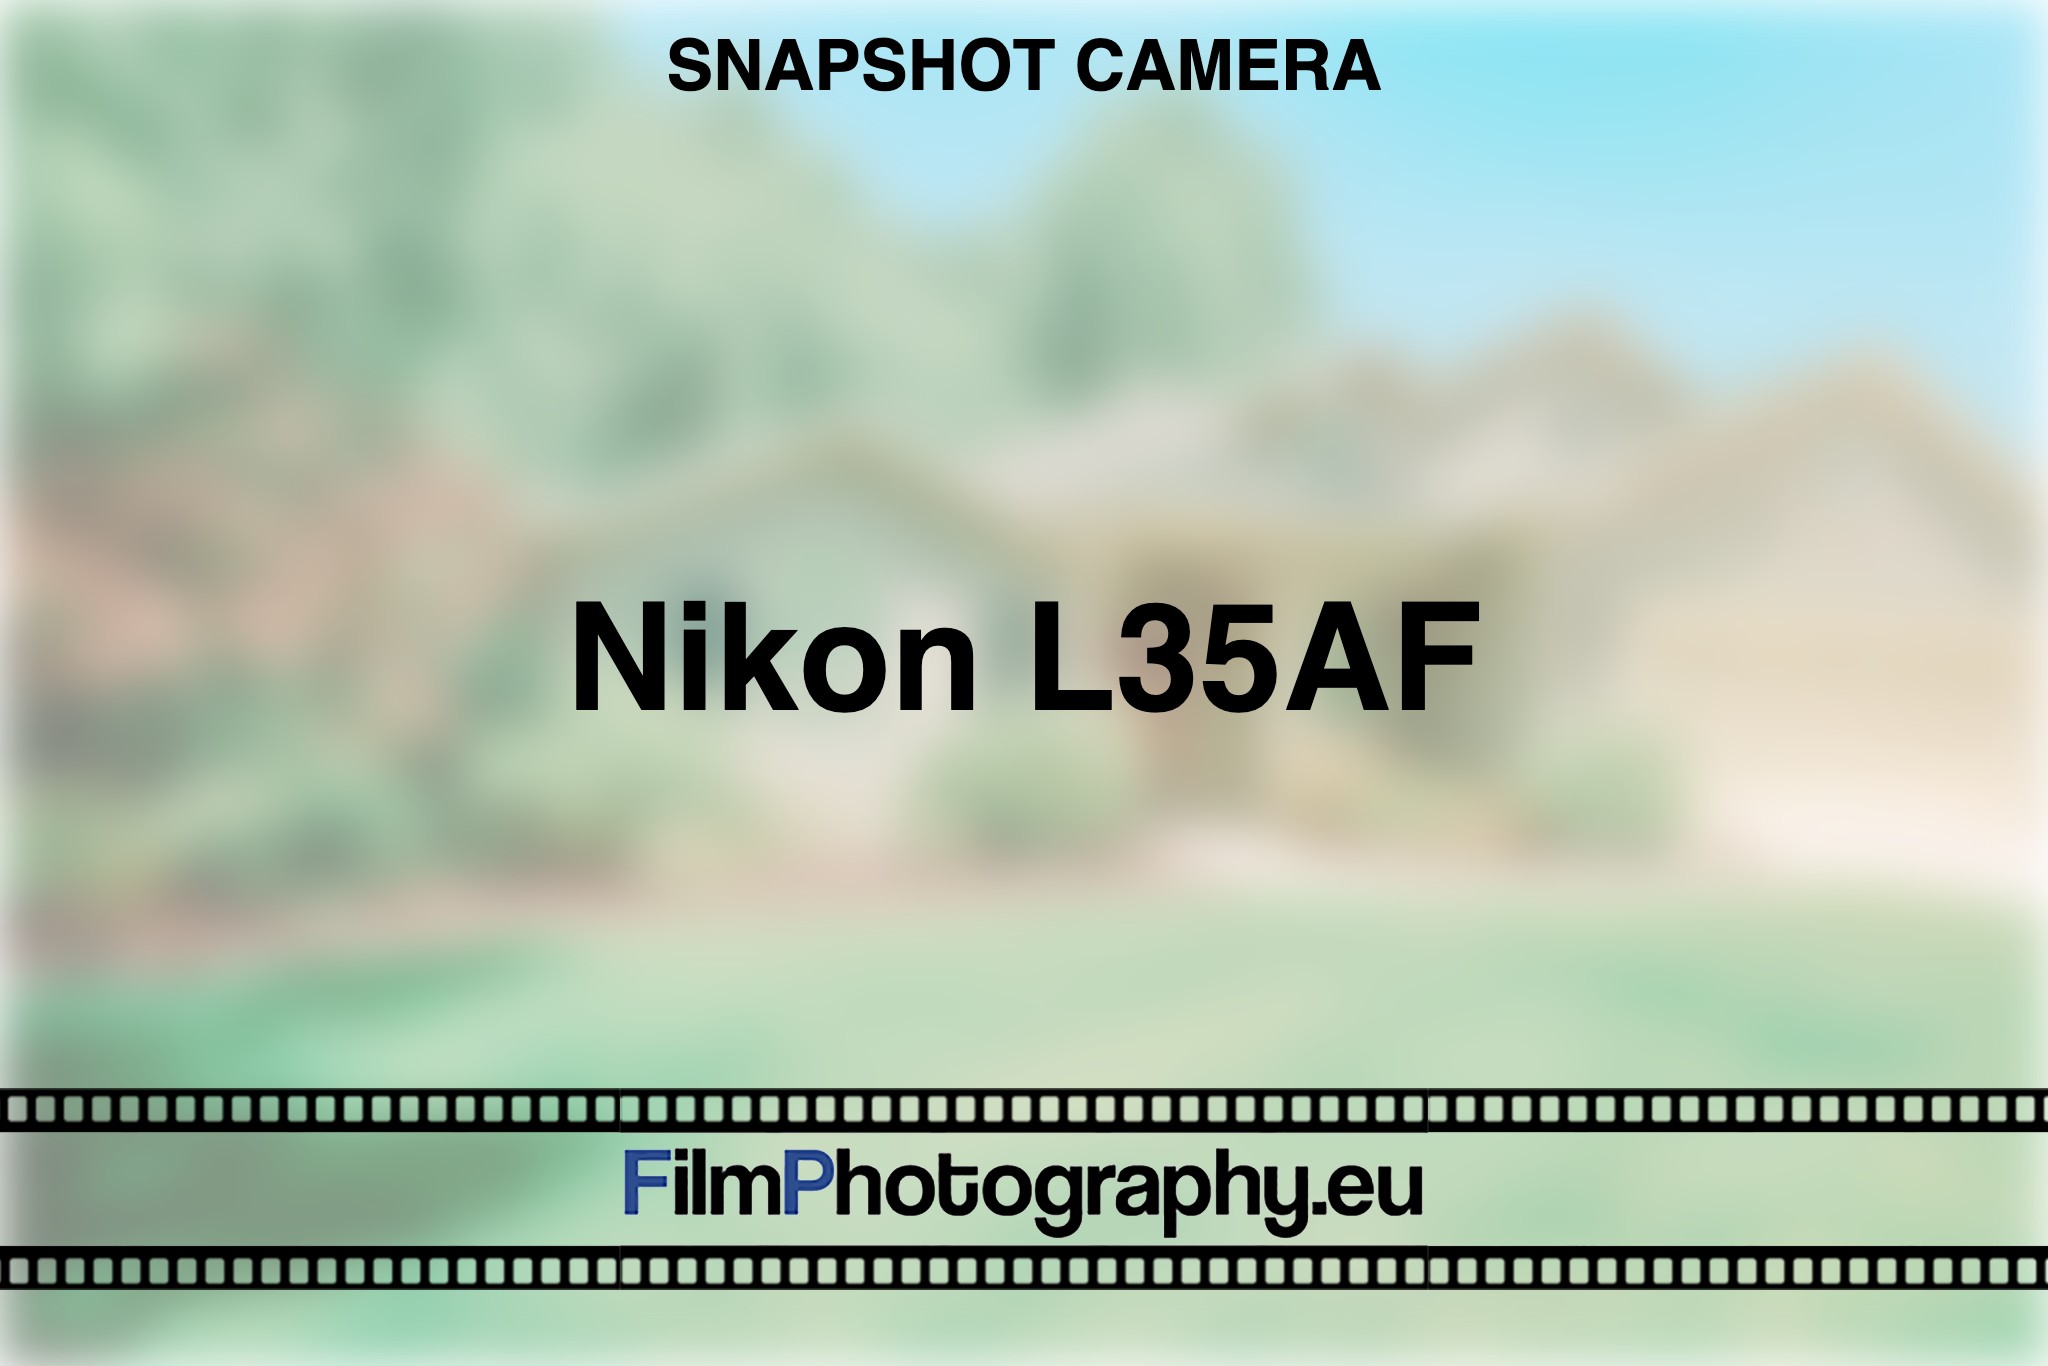 nikon-l35af-snapshot-camera-bnv